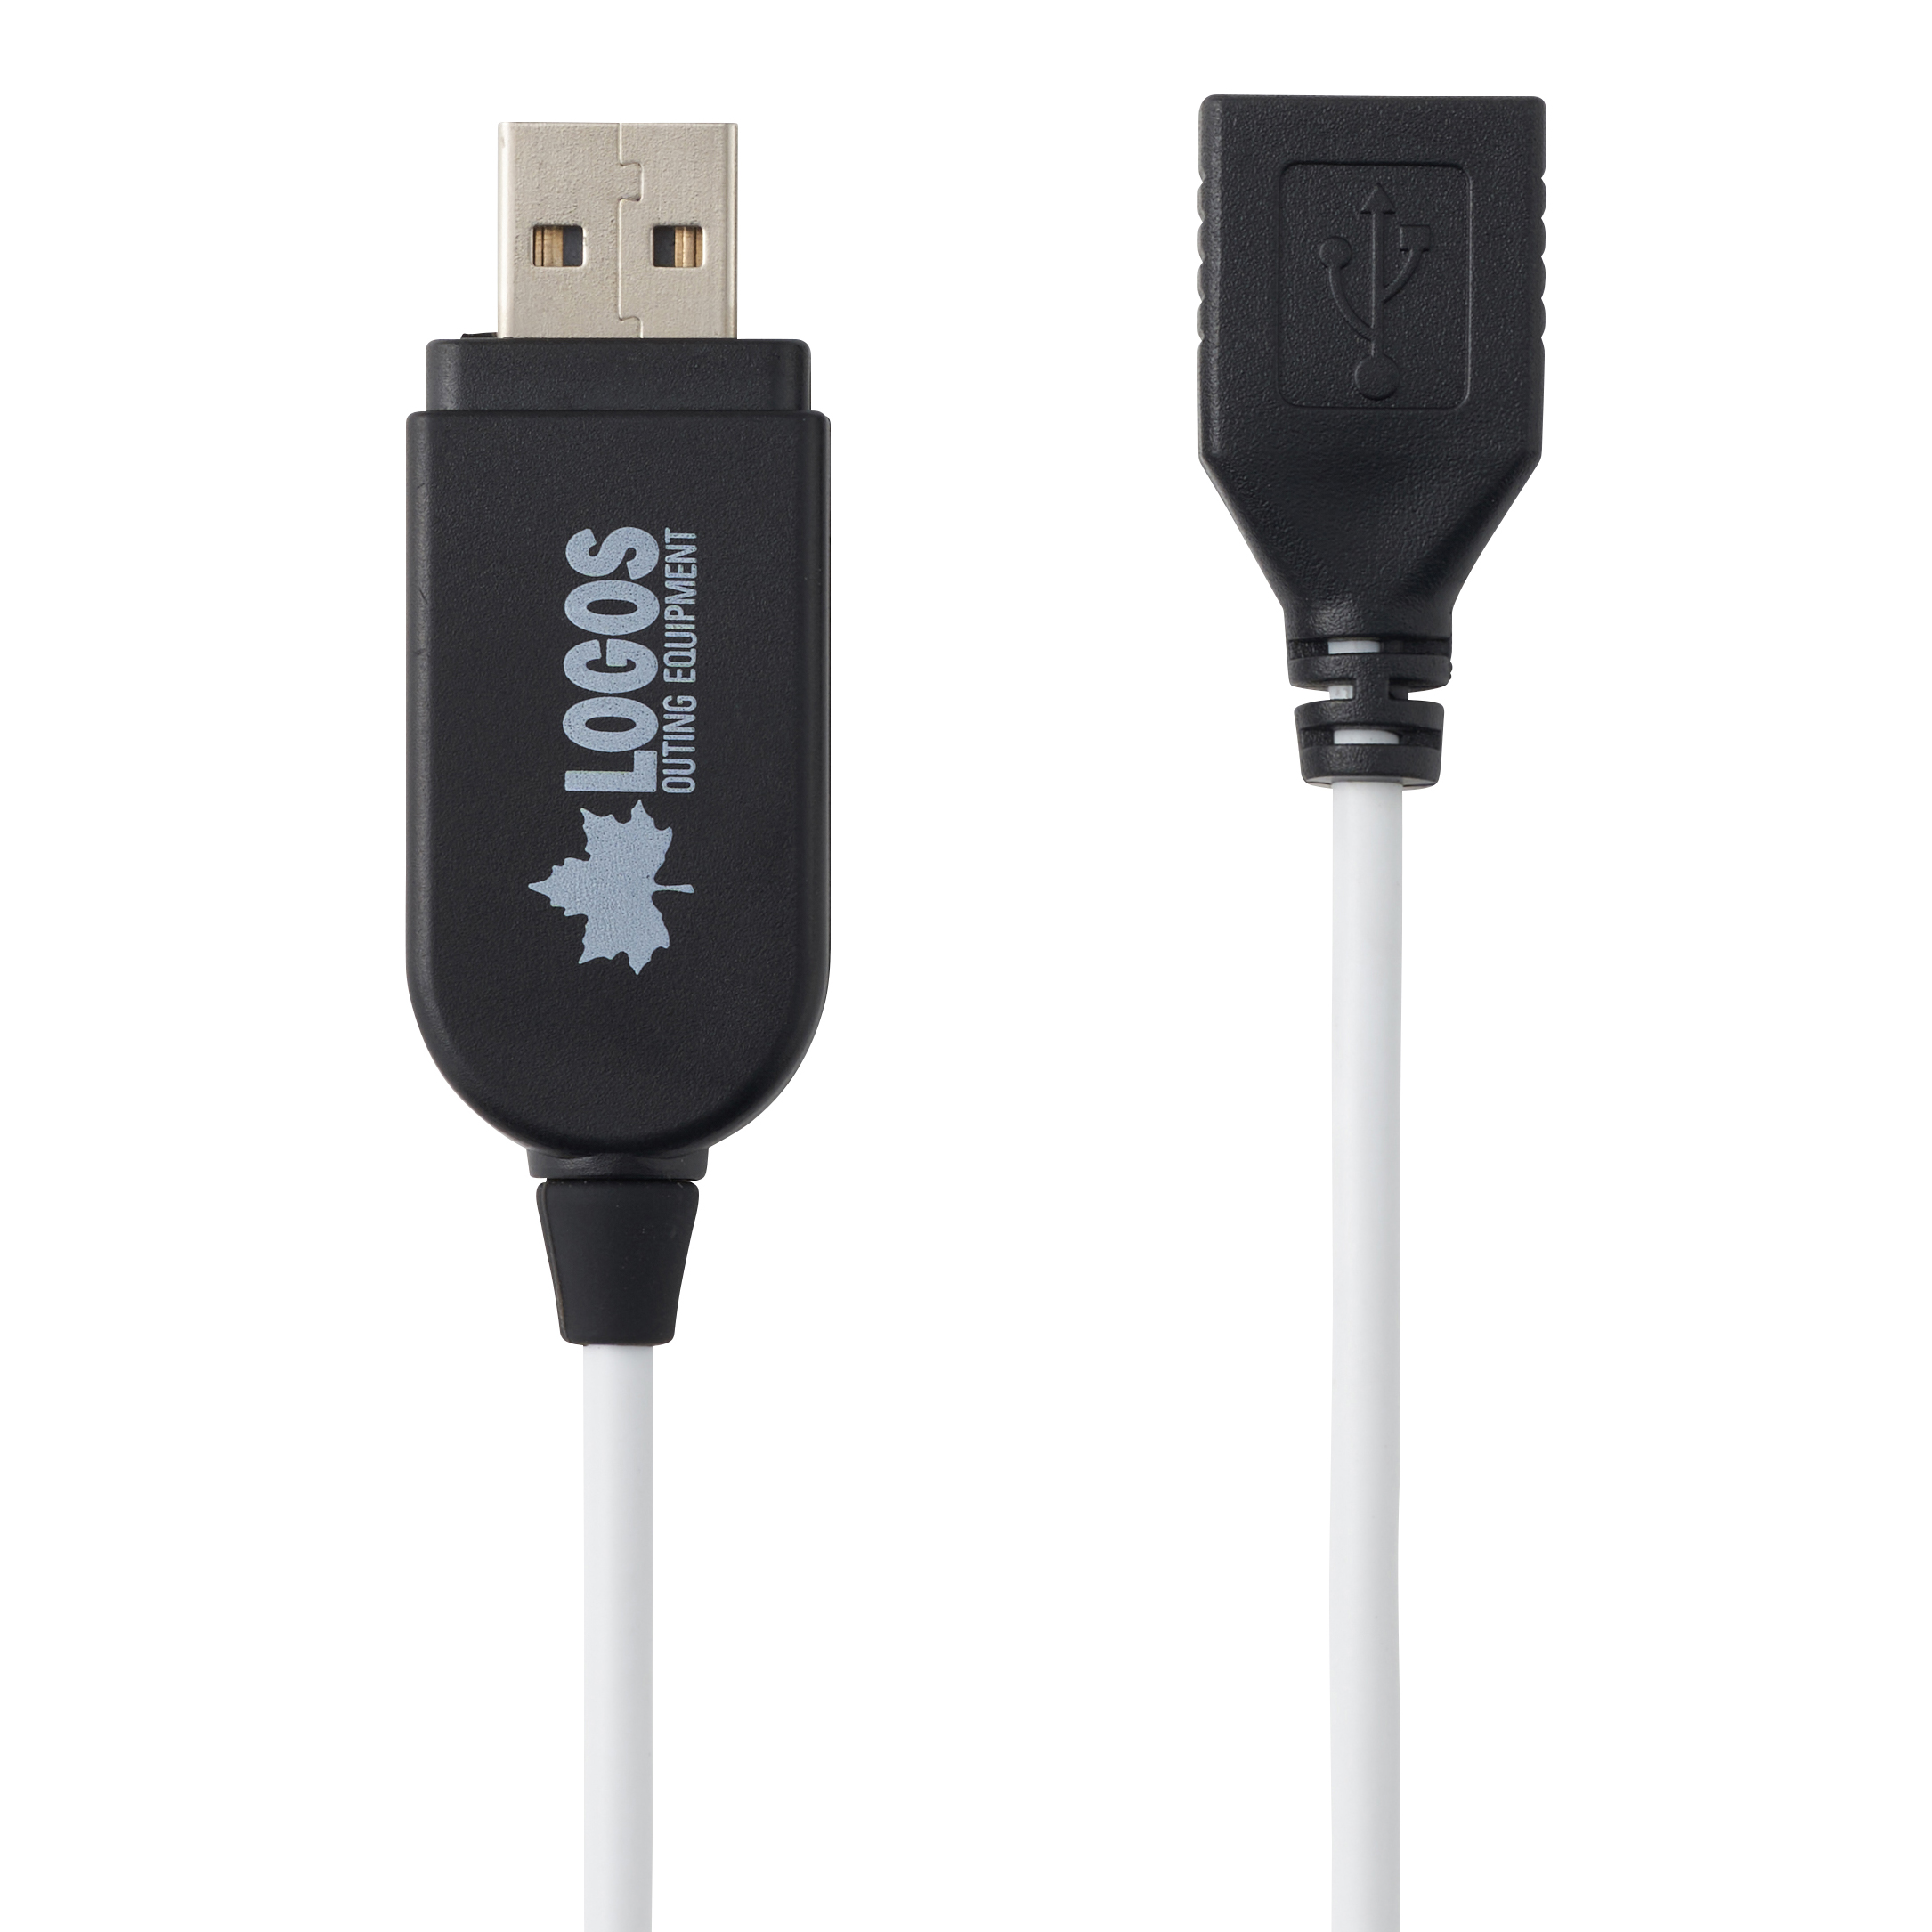 USBゆらめきバルブライト（3連タイプ）|ギア|野電|ランタン・ライト 